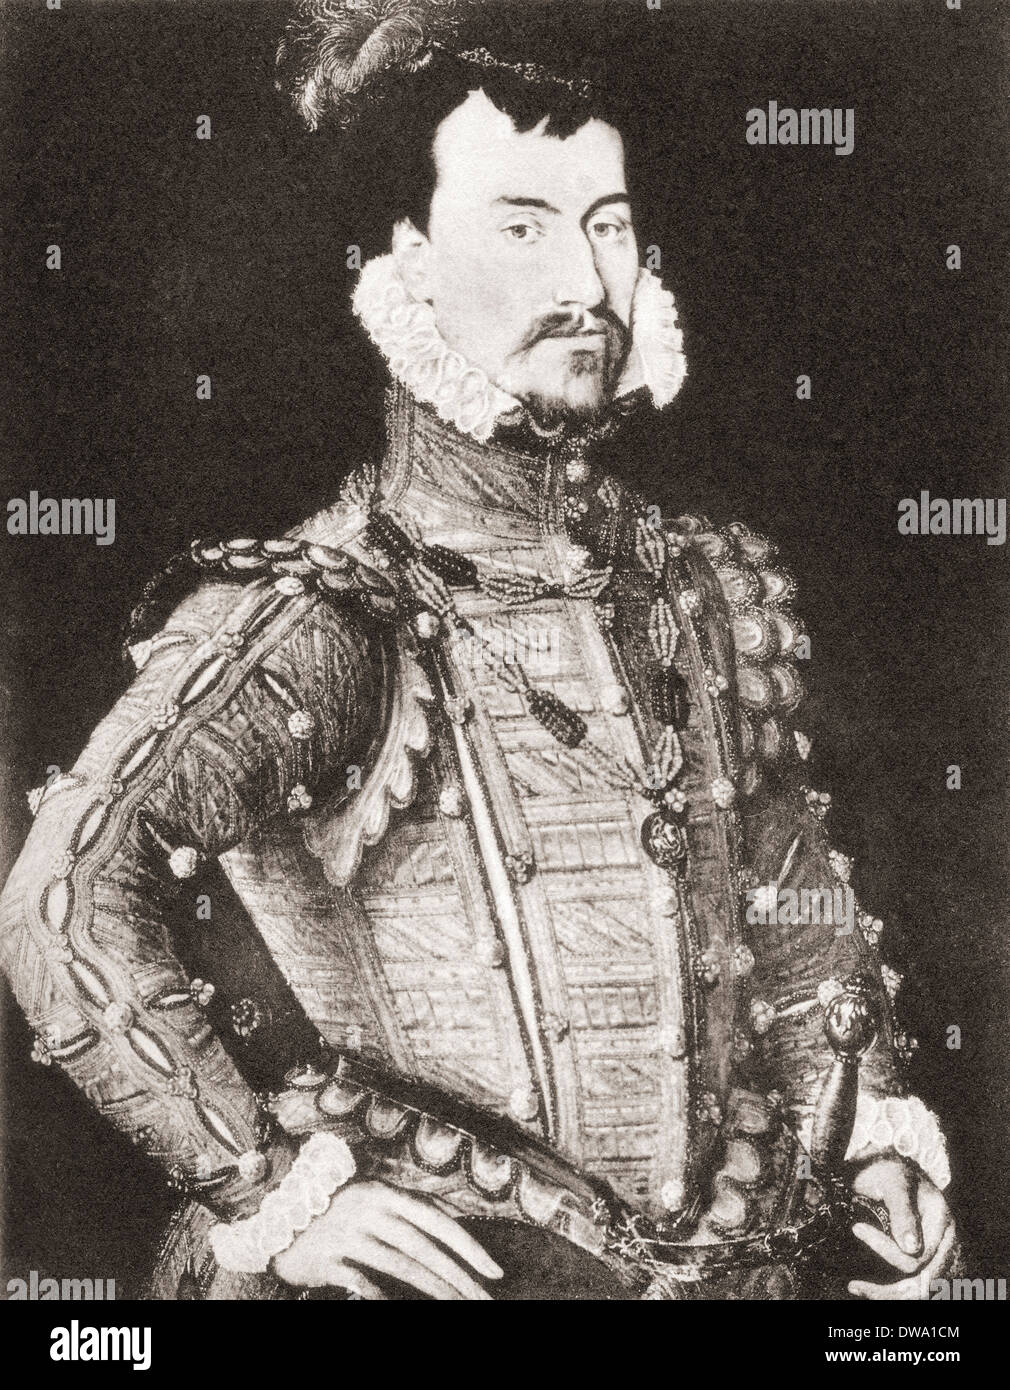 Robert Dudley, comte de Leicester, c.1532/1533-1588, âgé de vingt huit. Noble anglais, favori et ami d'Elizabeth I Banque D'Images